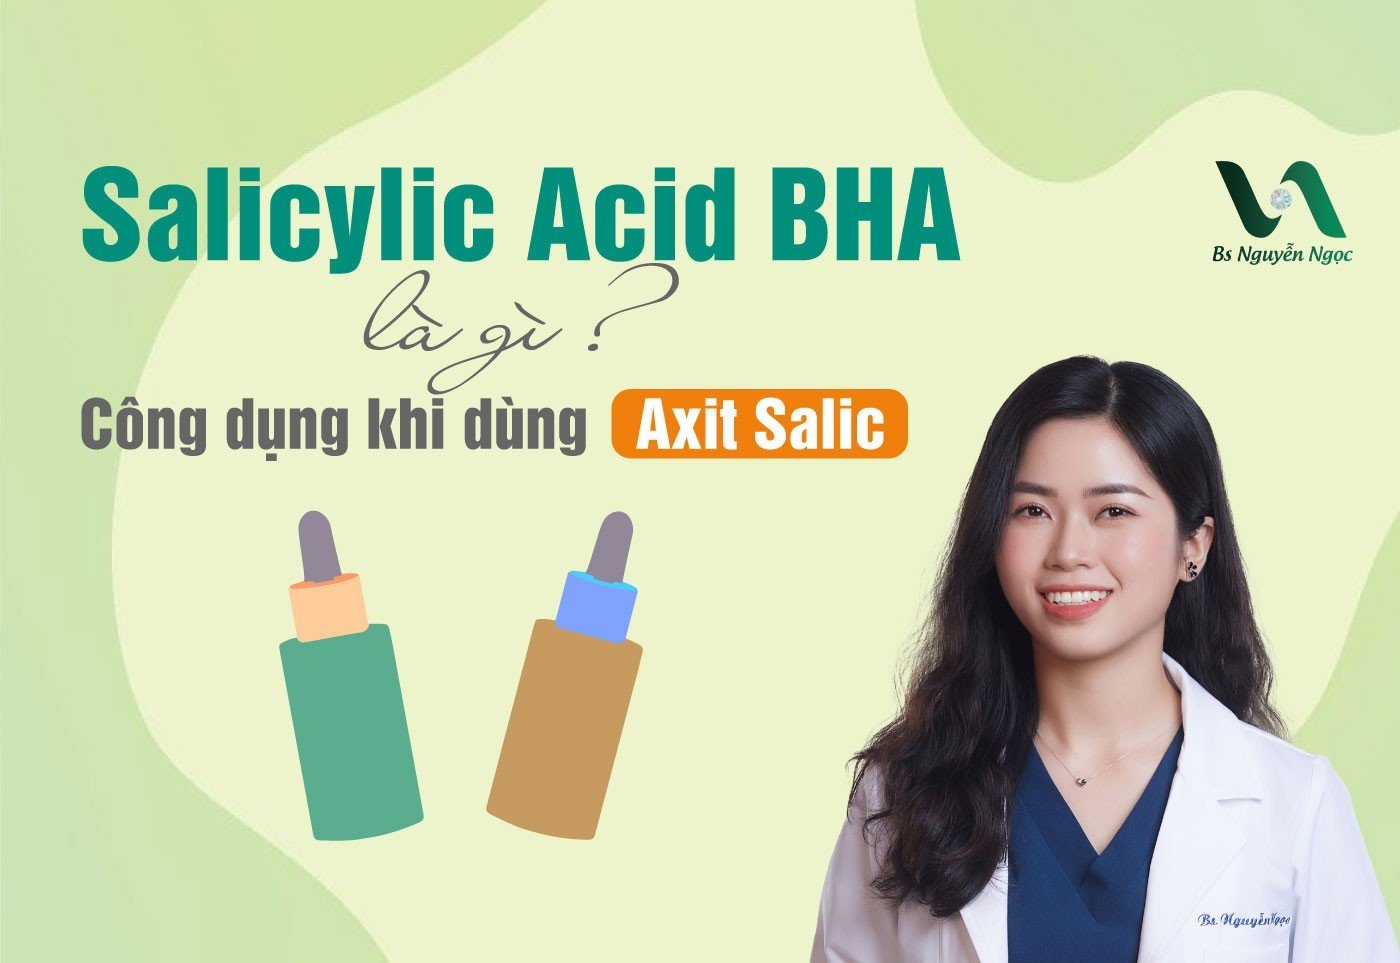 Salicylic Acid BHA là gì? Công dụng khi dùng Axit Salicylic